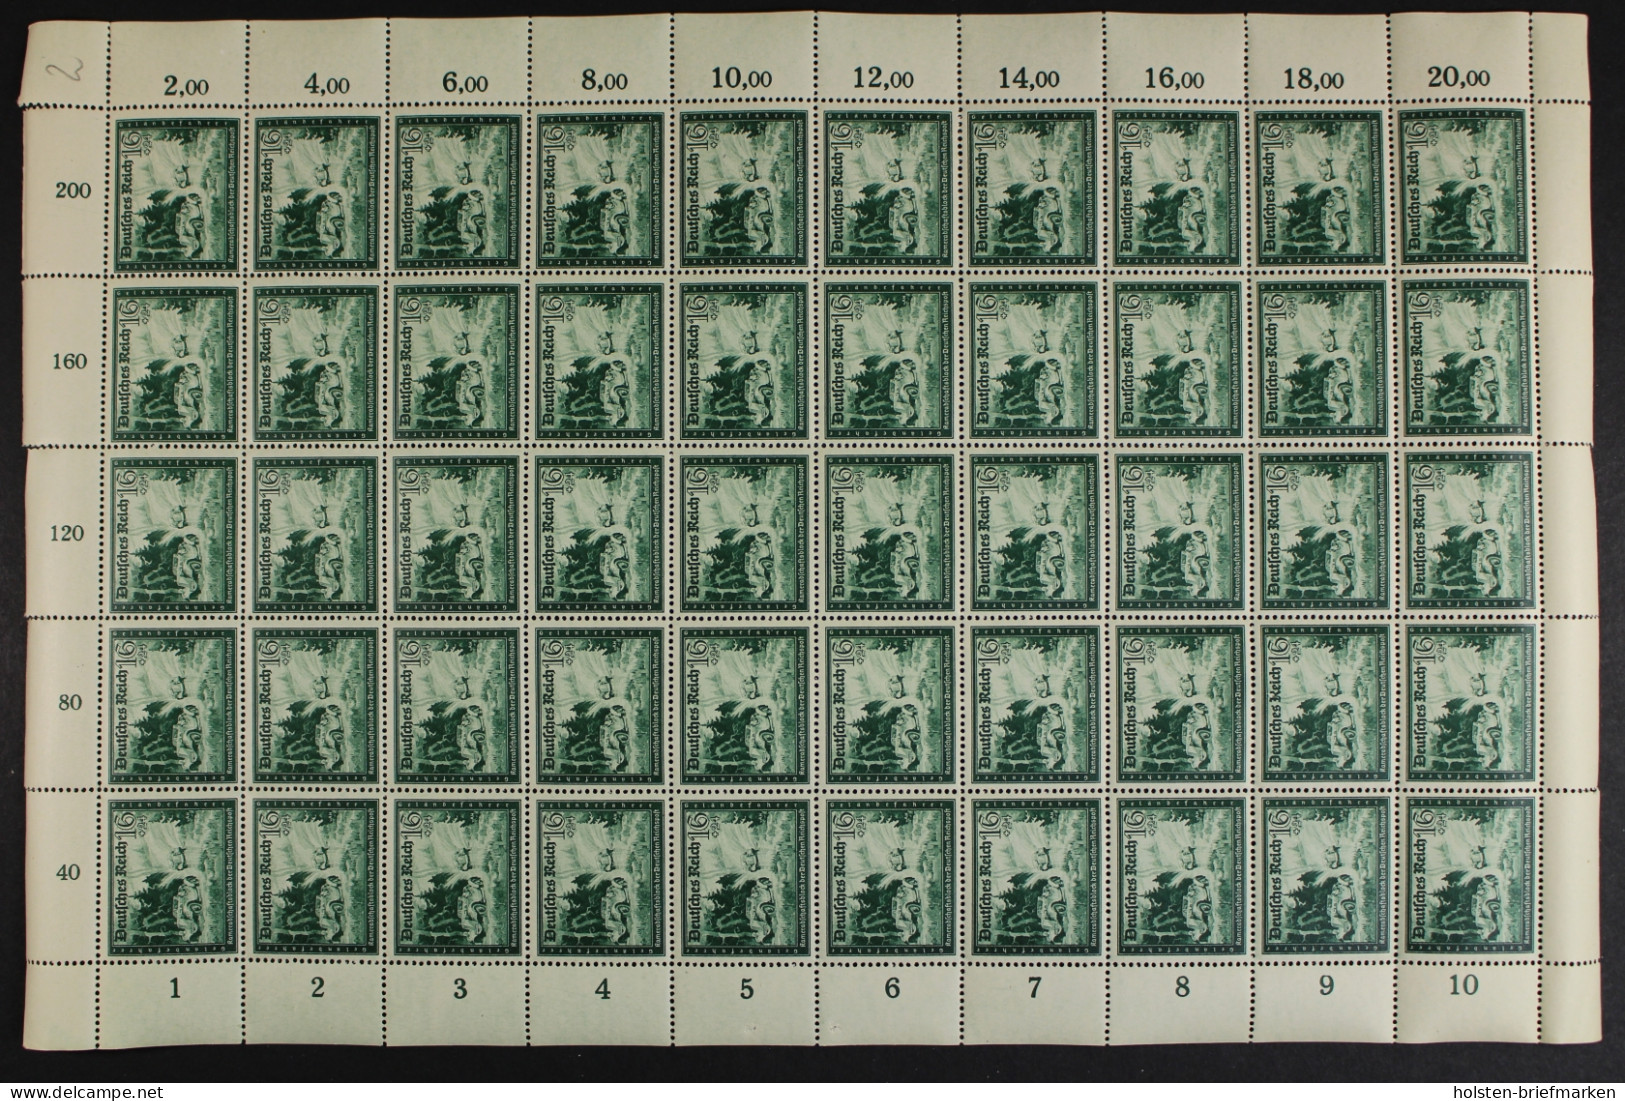 Deutsches Reich, MiNr. 891 PLF I, 50er Bogen, Postfrisch - Abarten & Kuriositäten